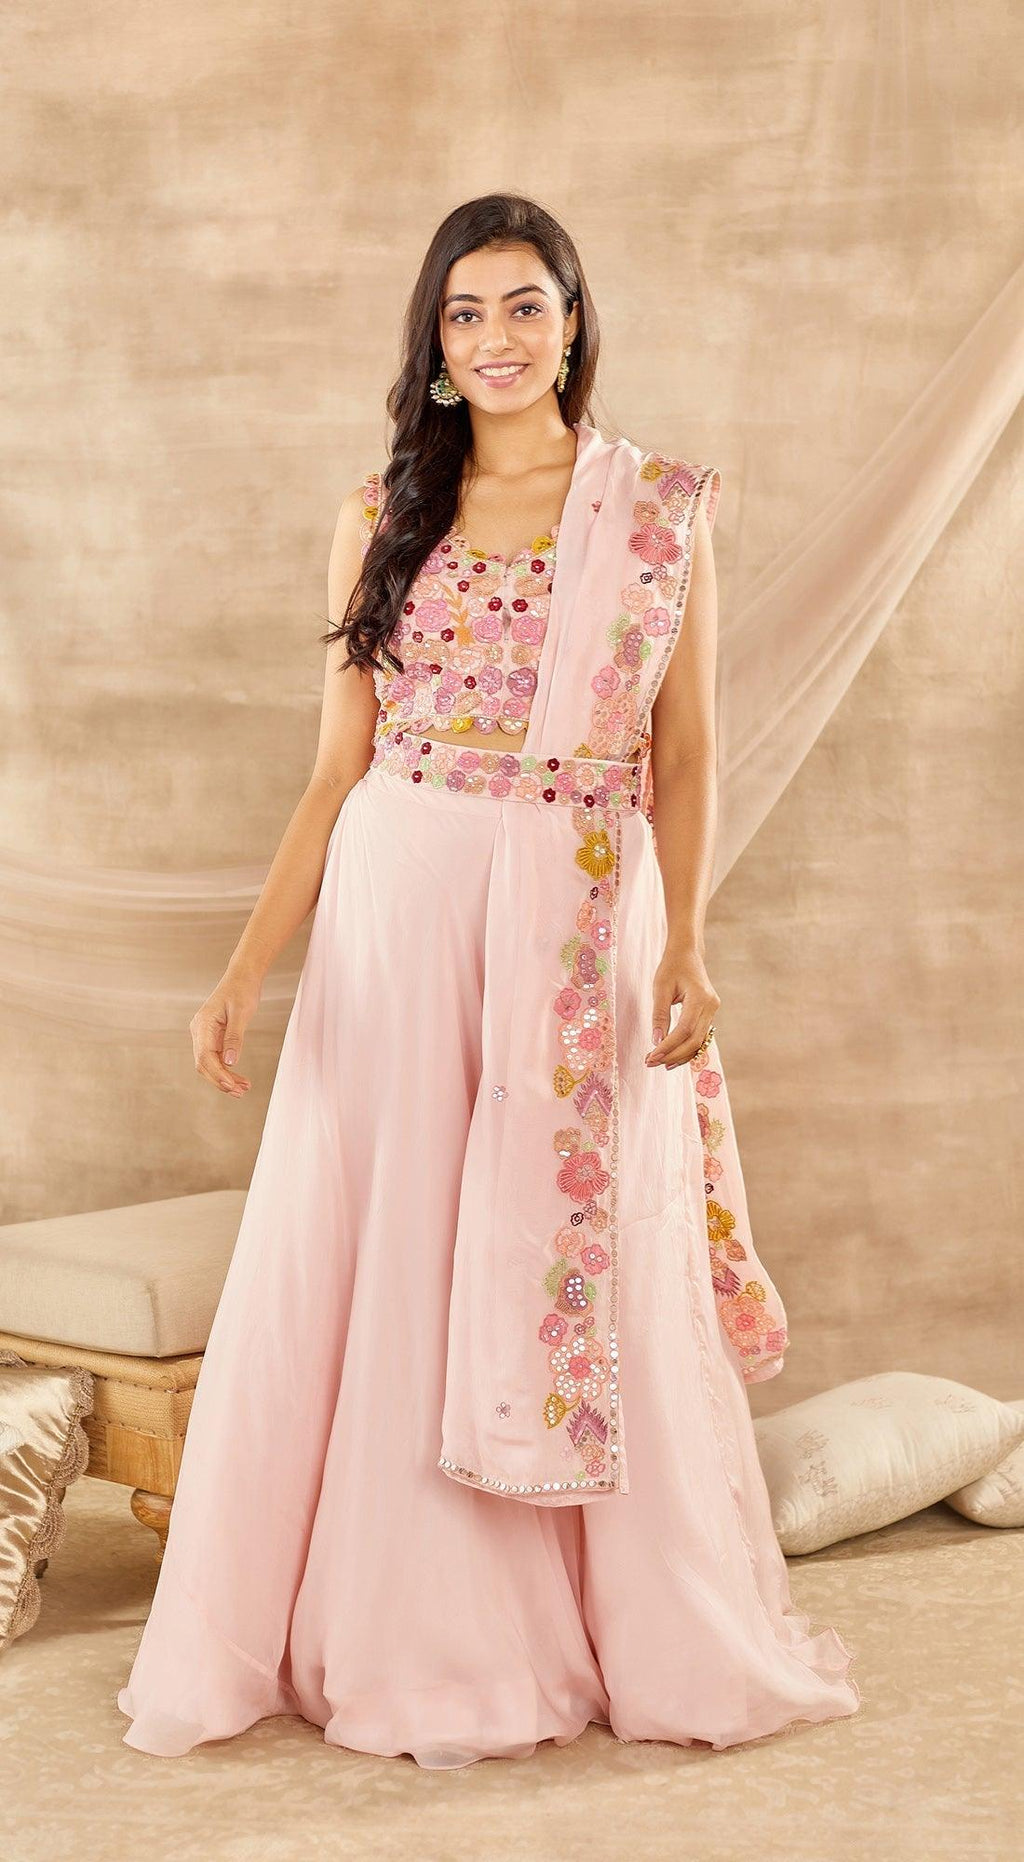 Buy KING STUDIO lacha velvet bridal lengha choli latest bollywood design  for women at Amazon.in